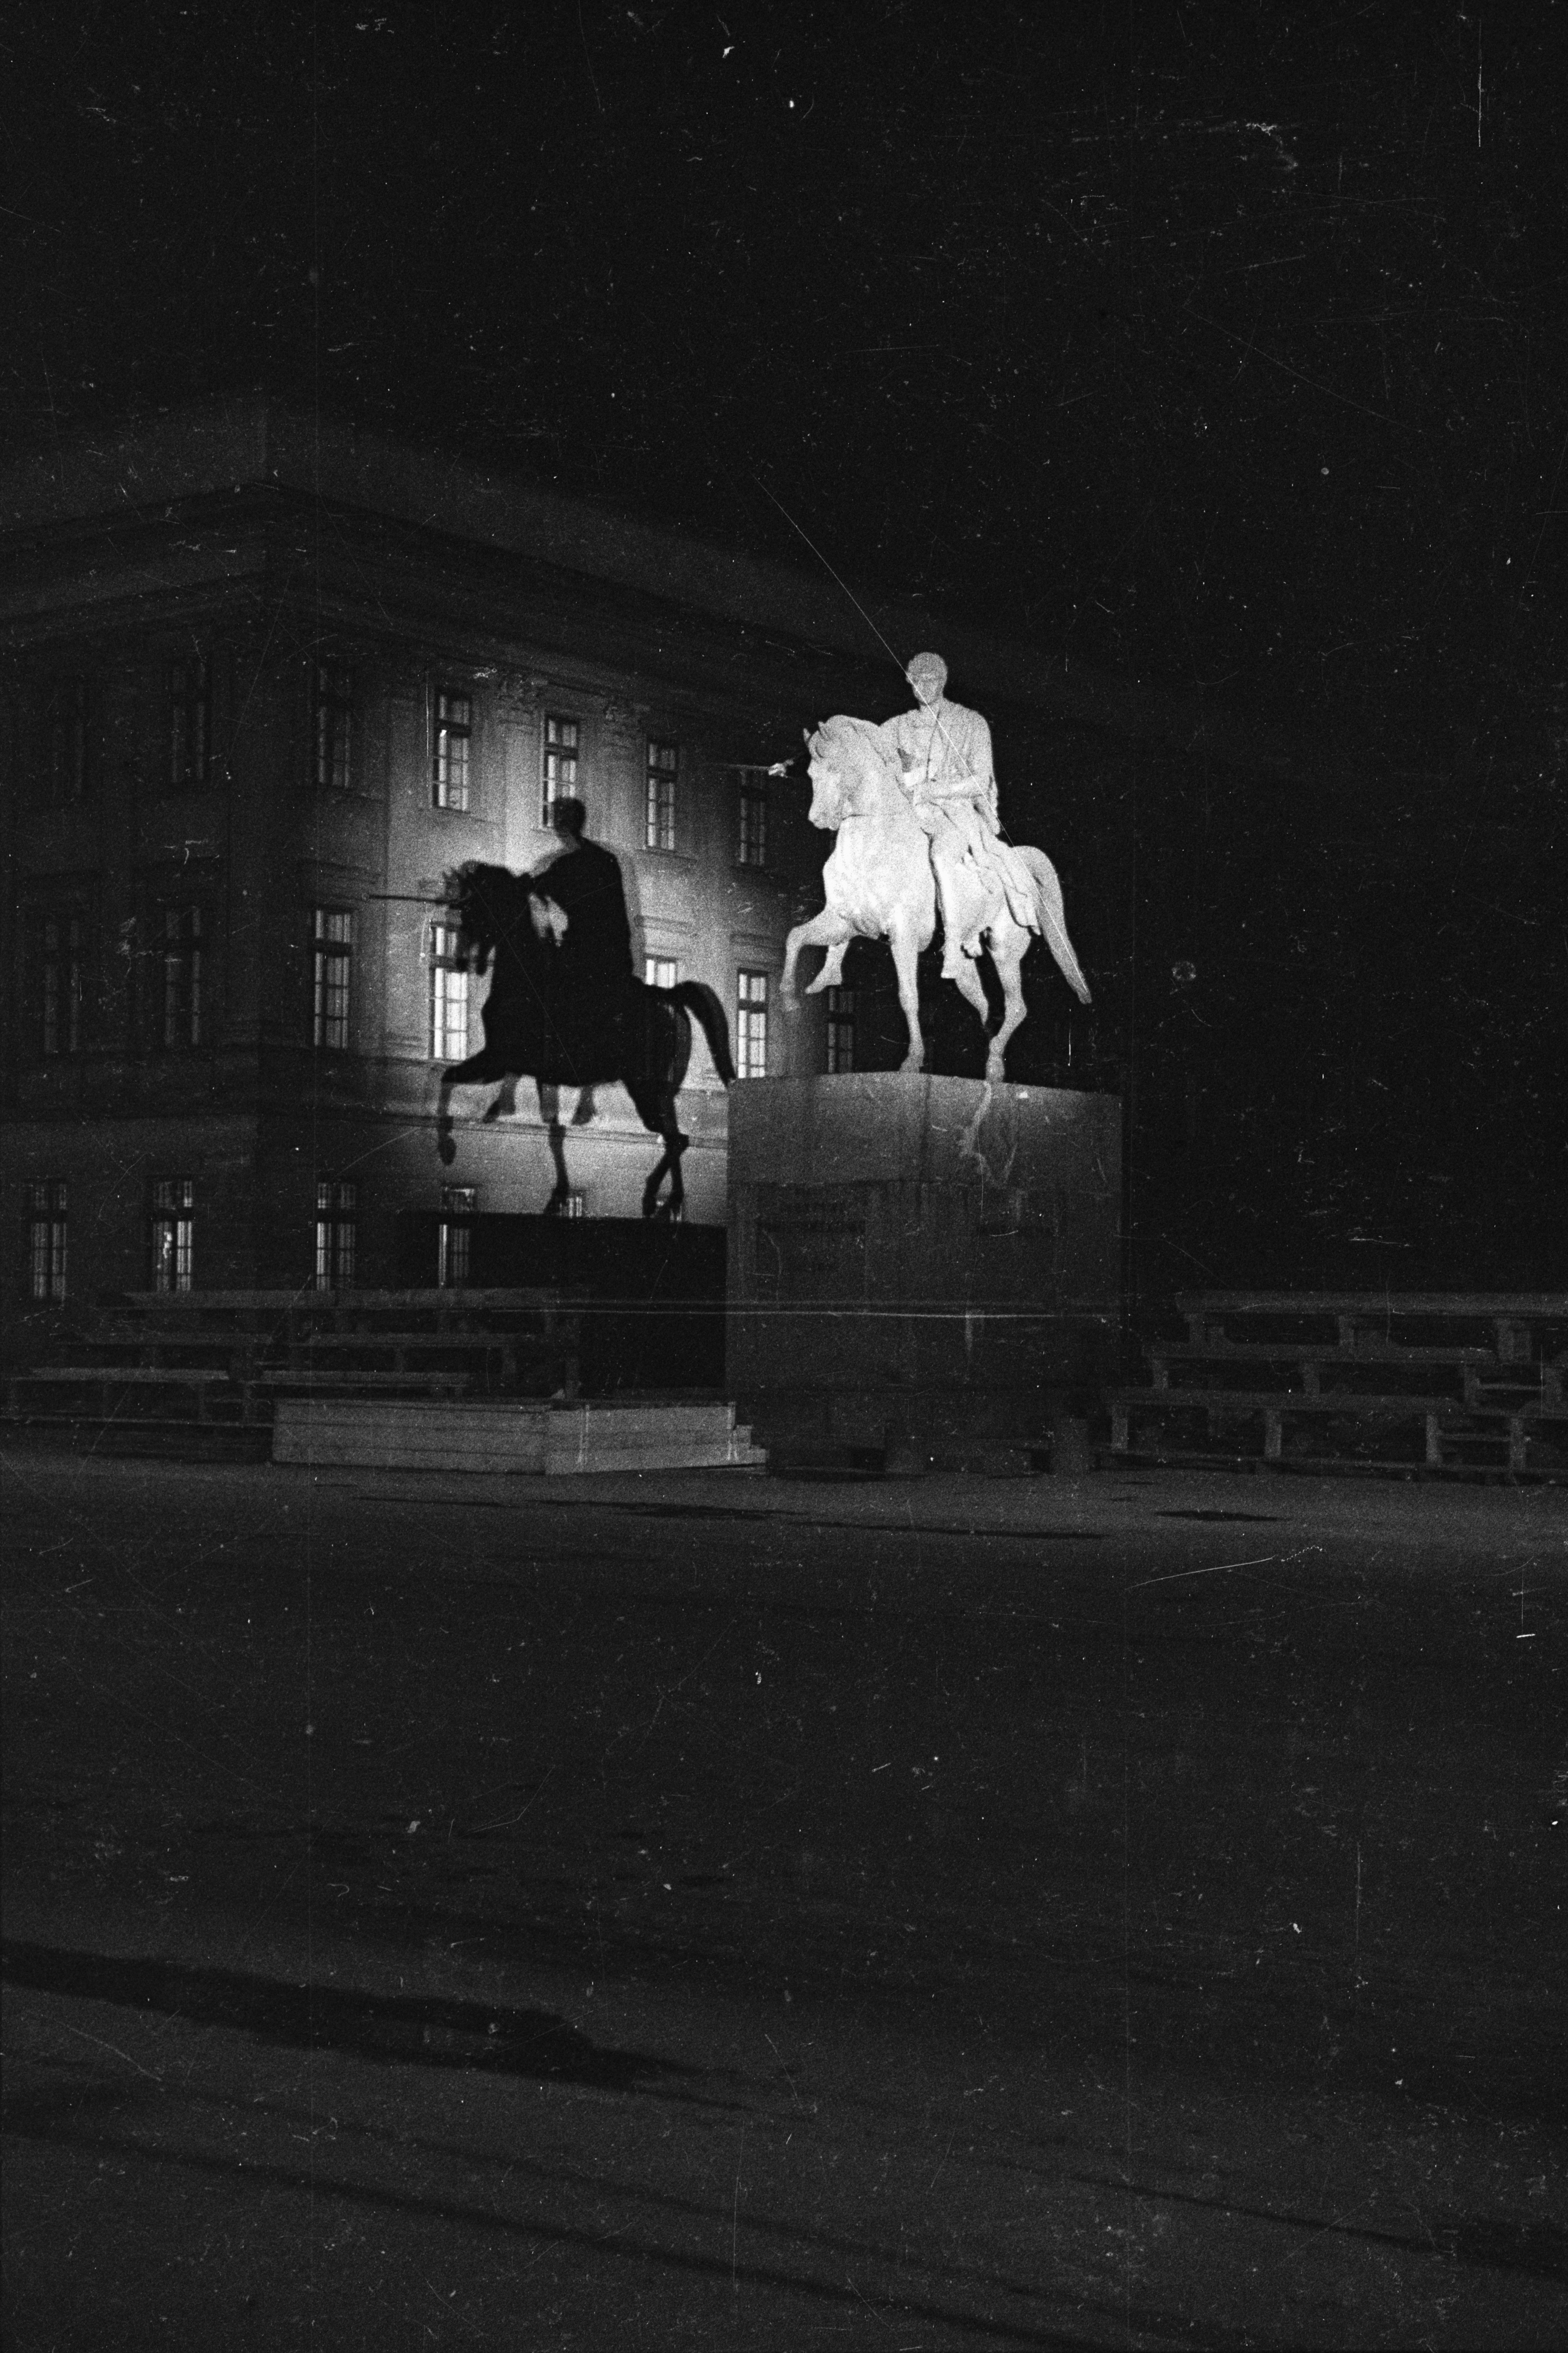 乔泽夫·波尼亚托斯基王子雕像 by 索菲亚 乔梅托夫斯卡 - 1938年 - 24 x 36毫米 華沙博物館